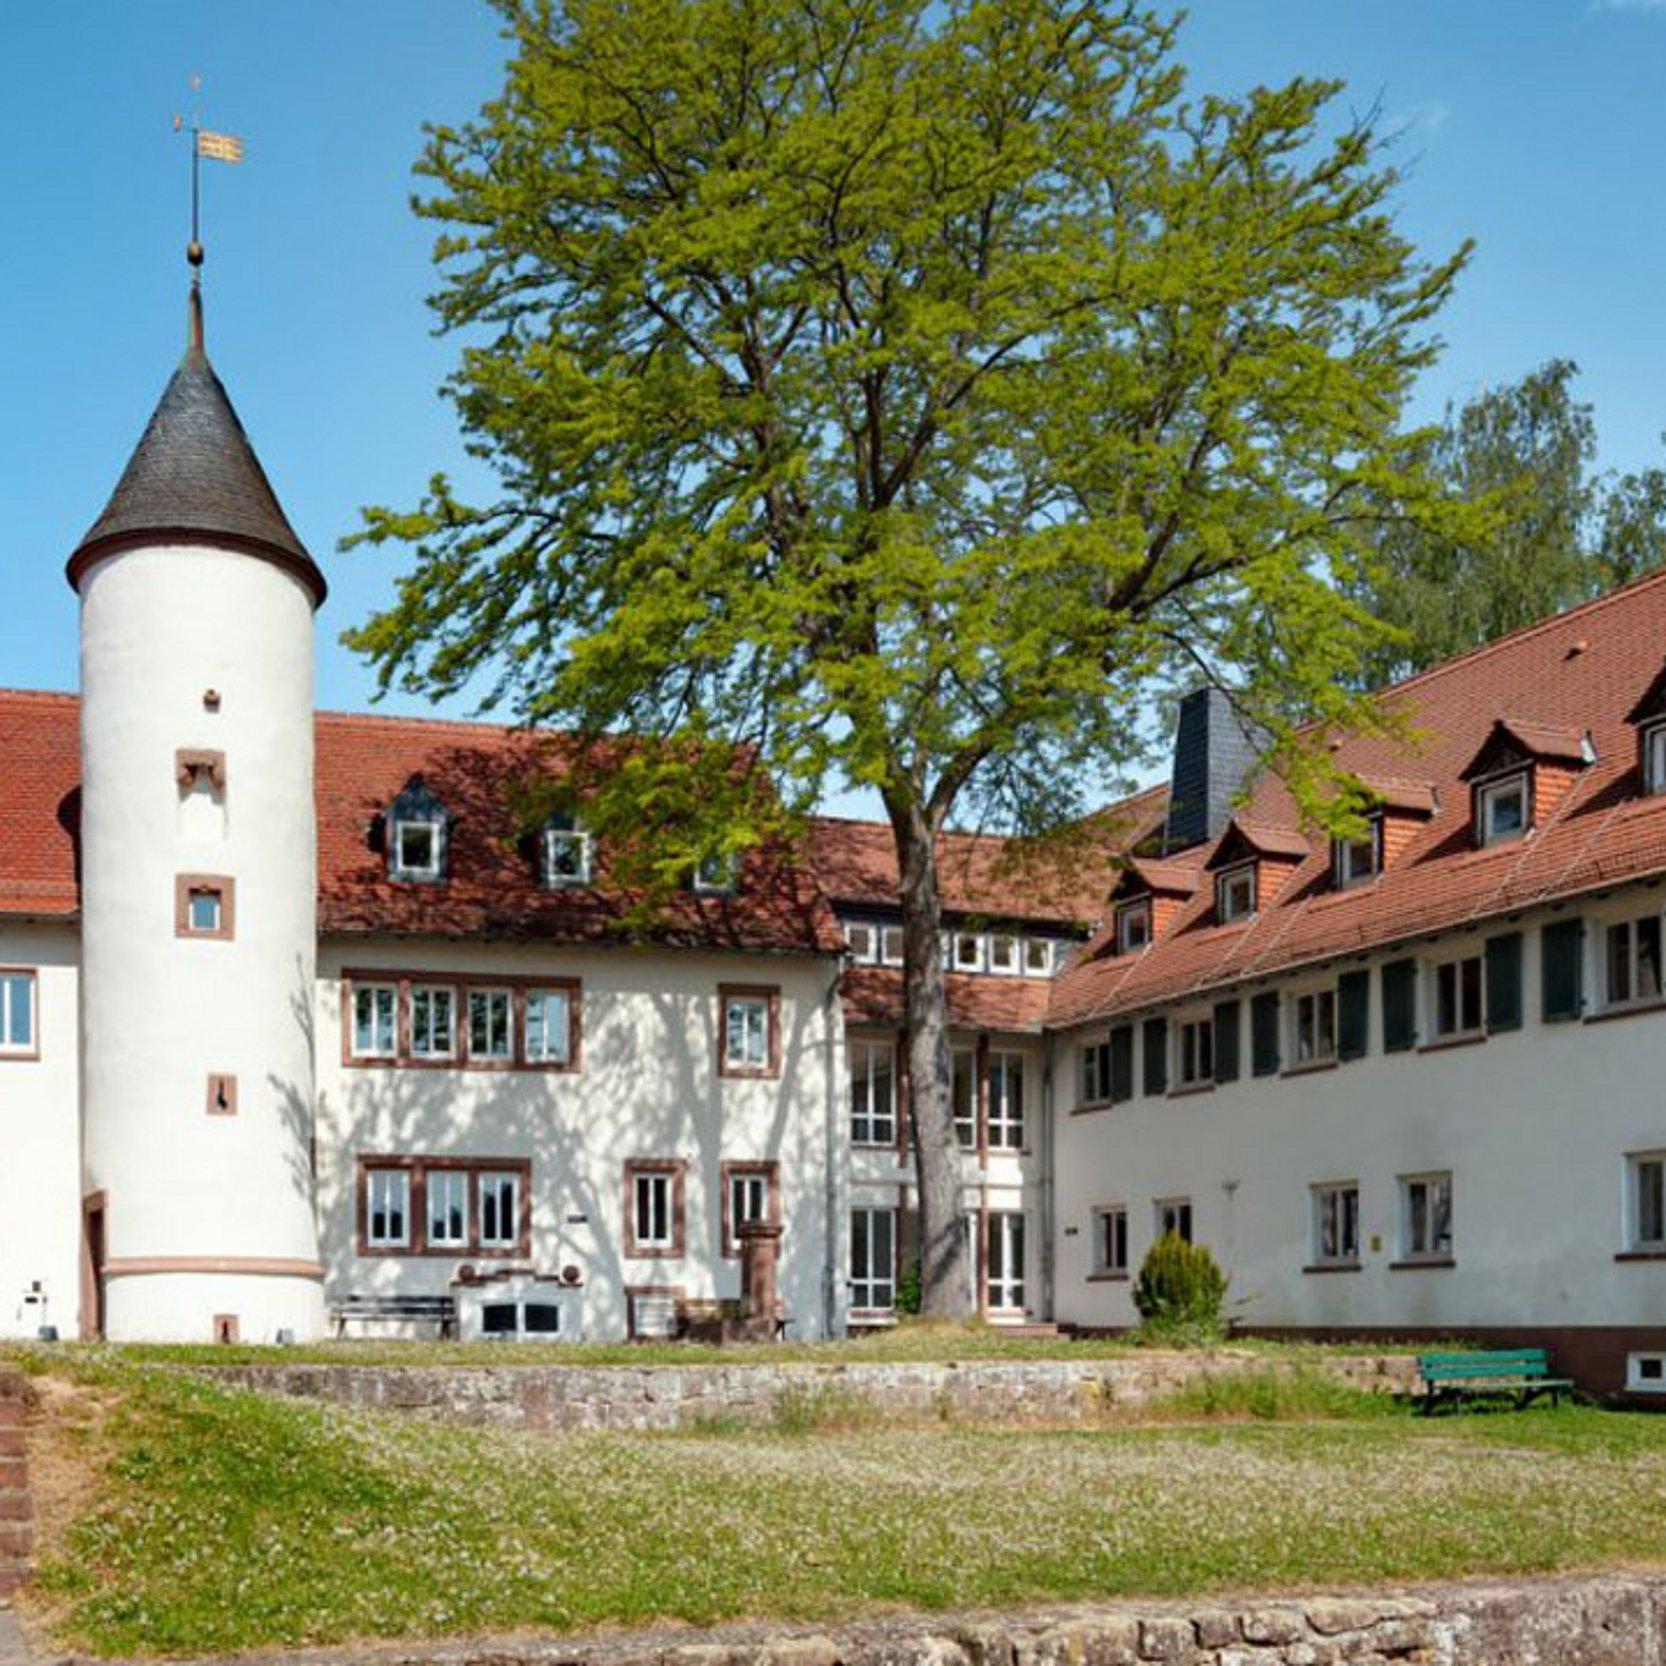 Kloster Höchst - Blick in den Hof. In der Mitte ein Türmchen, rechts ein langgezogener Seitenflügel